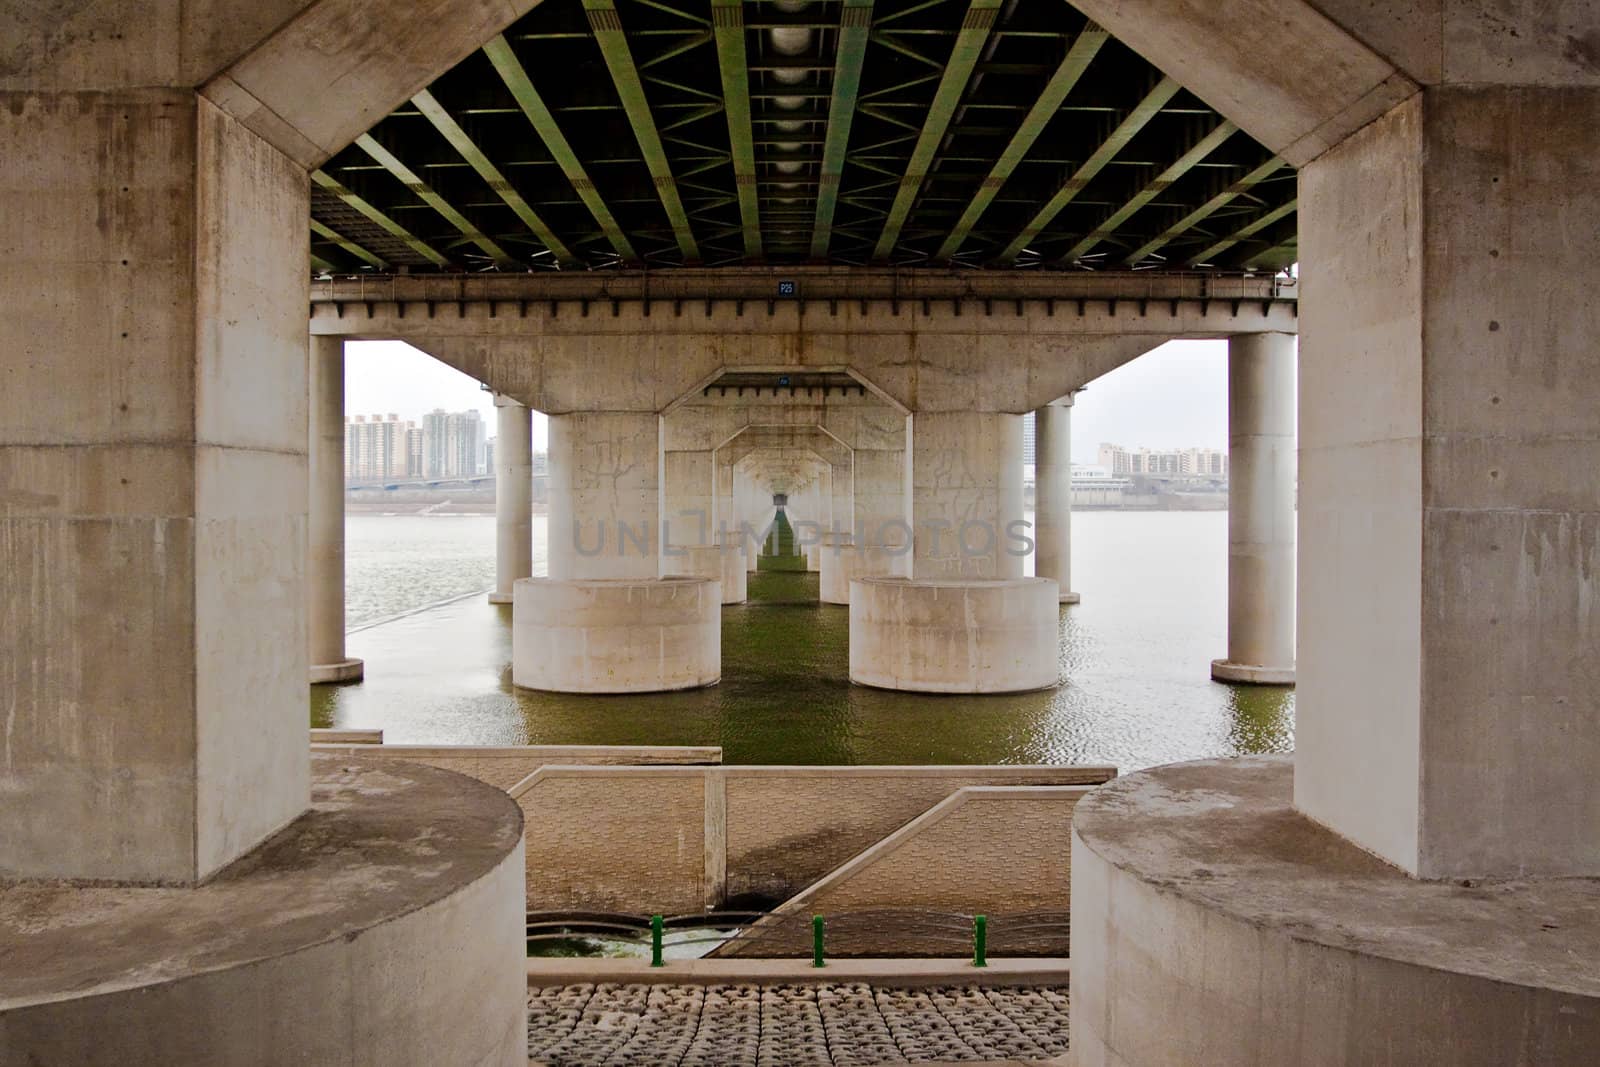 Under the bridge by dsmsoft